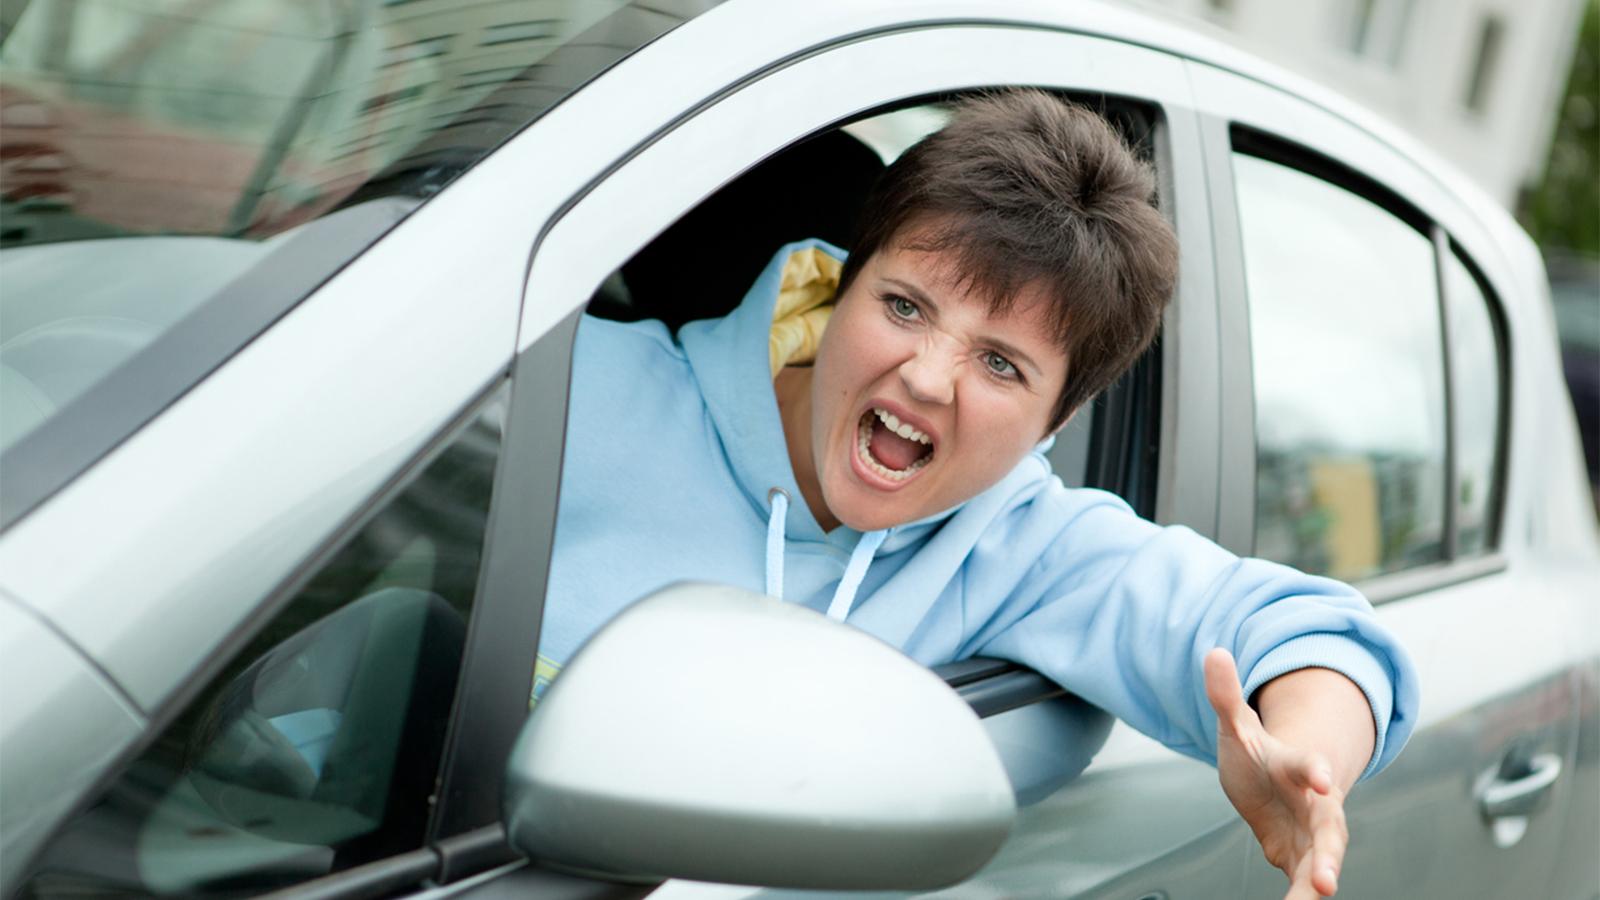   Lái xe khi tức giận gây nguy hiểm cho bản thân và người khác  